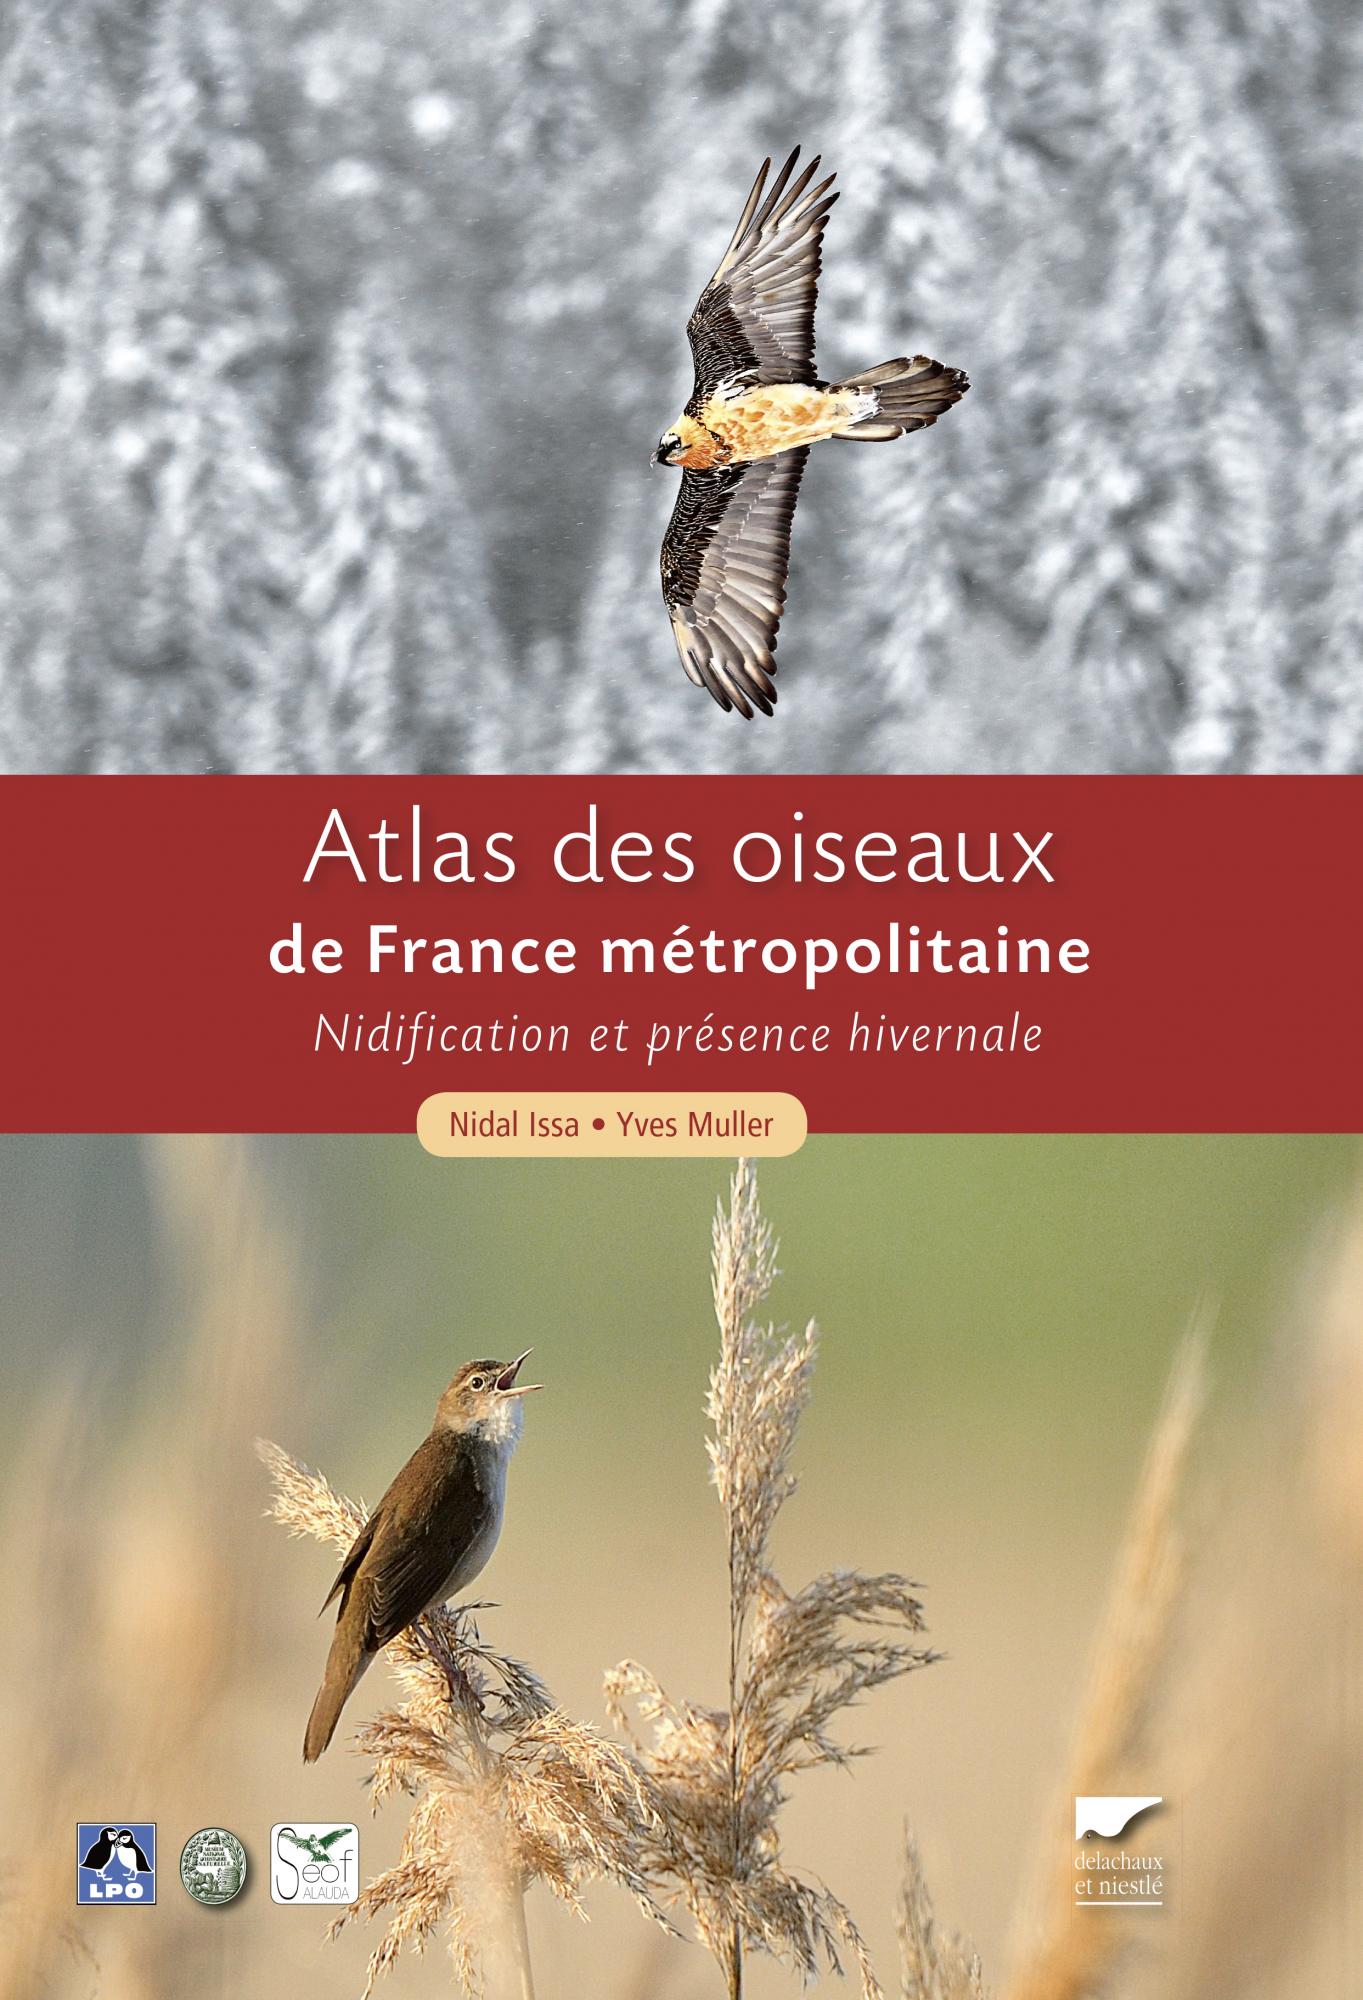 Atlas des oiseaux nicheurs de France - livre pour ornithologue